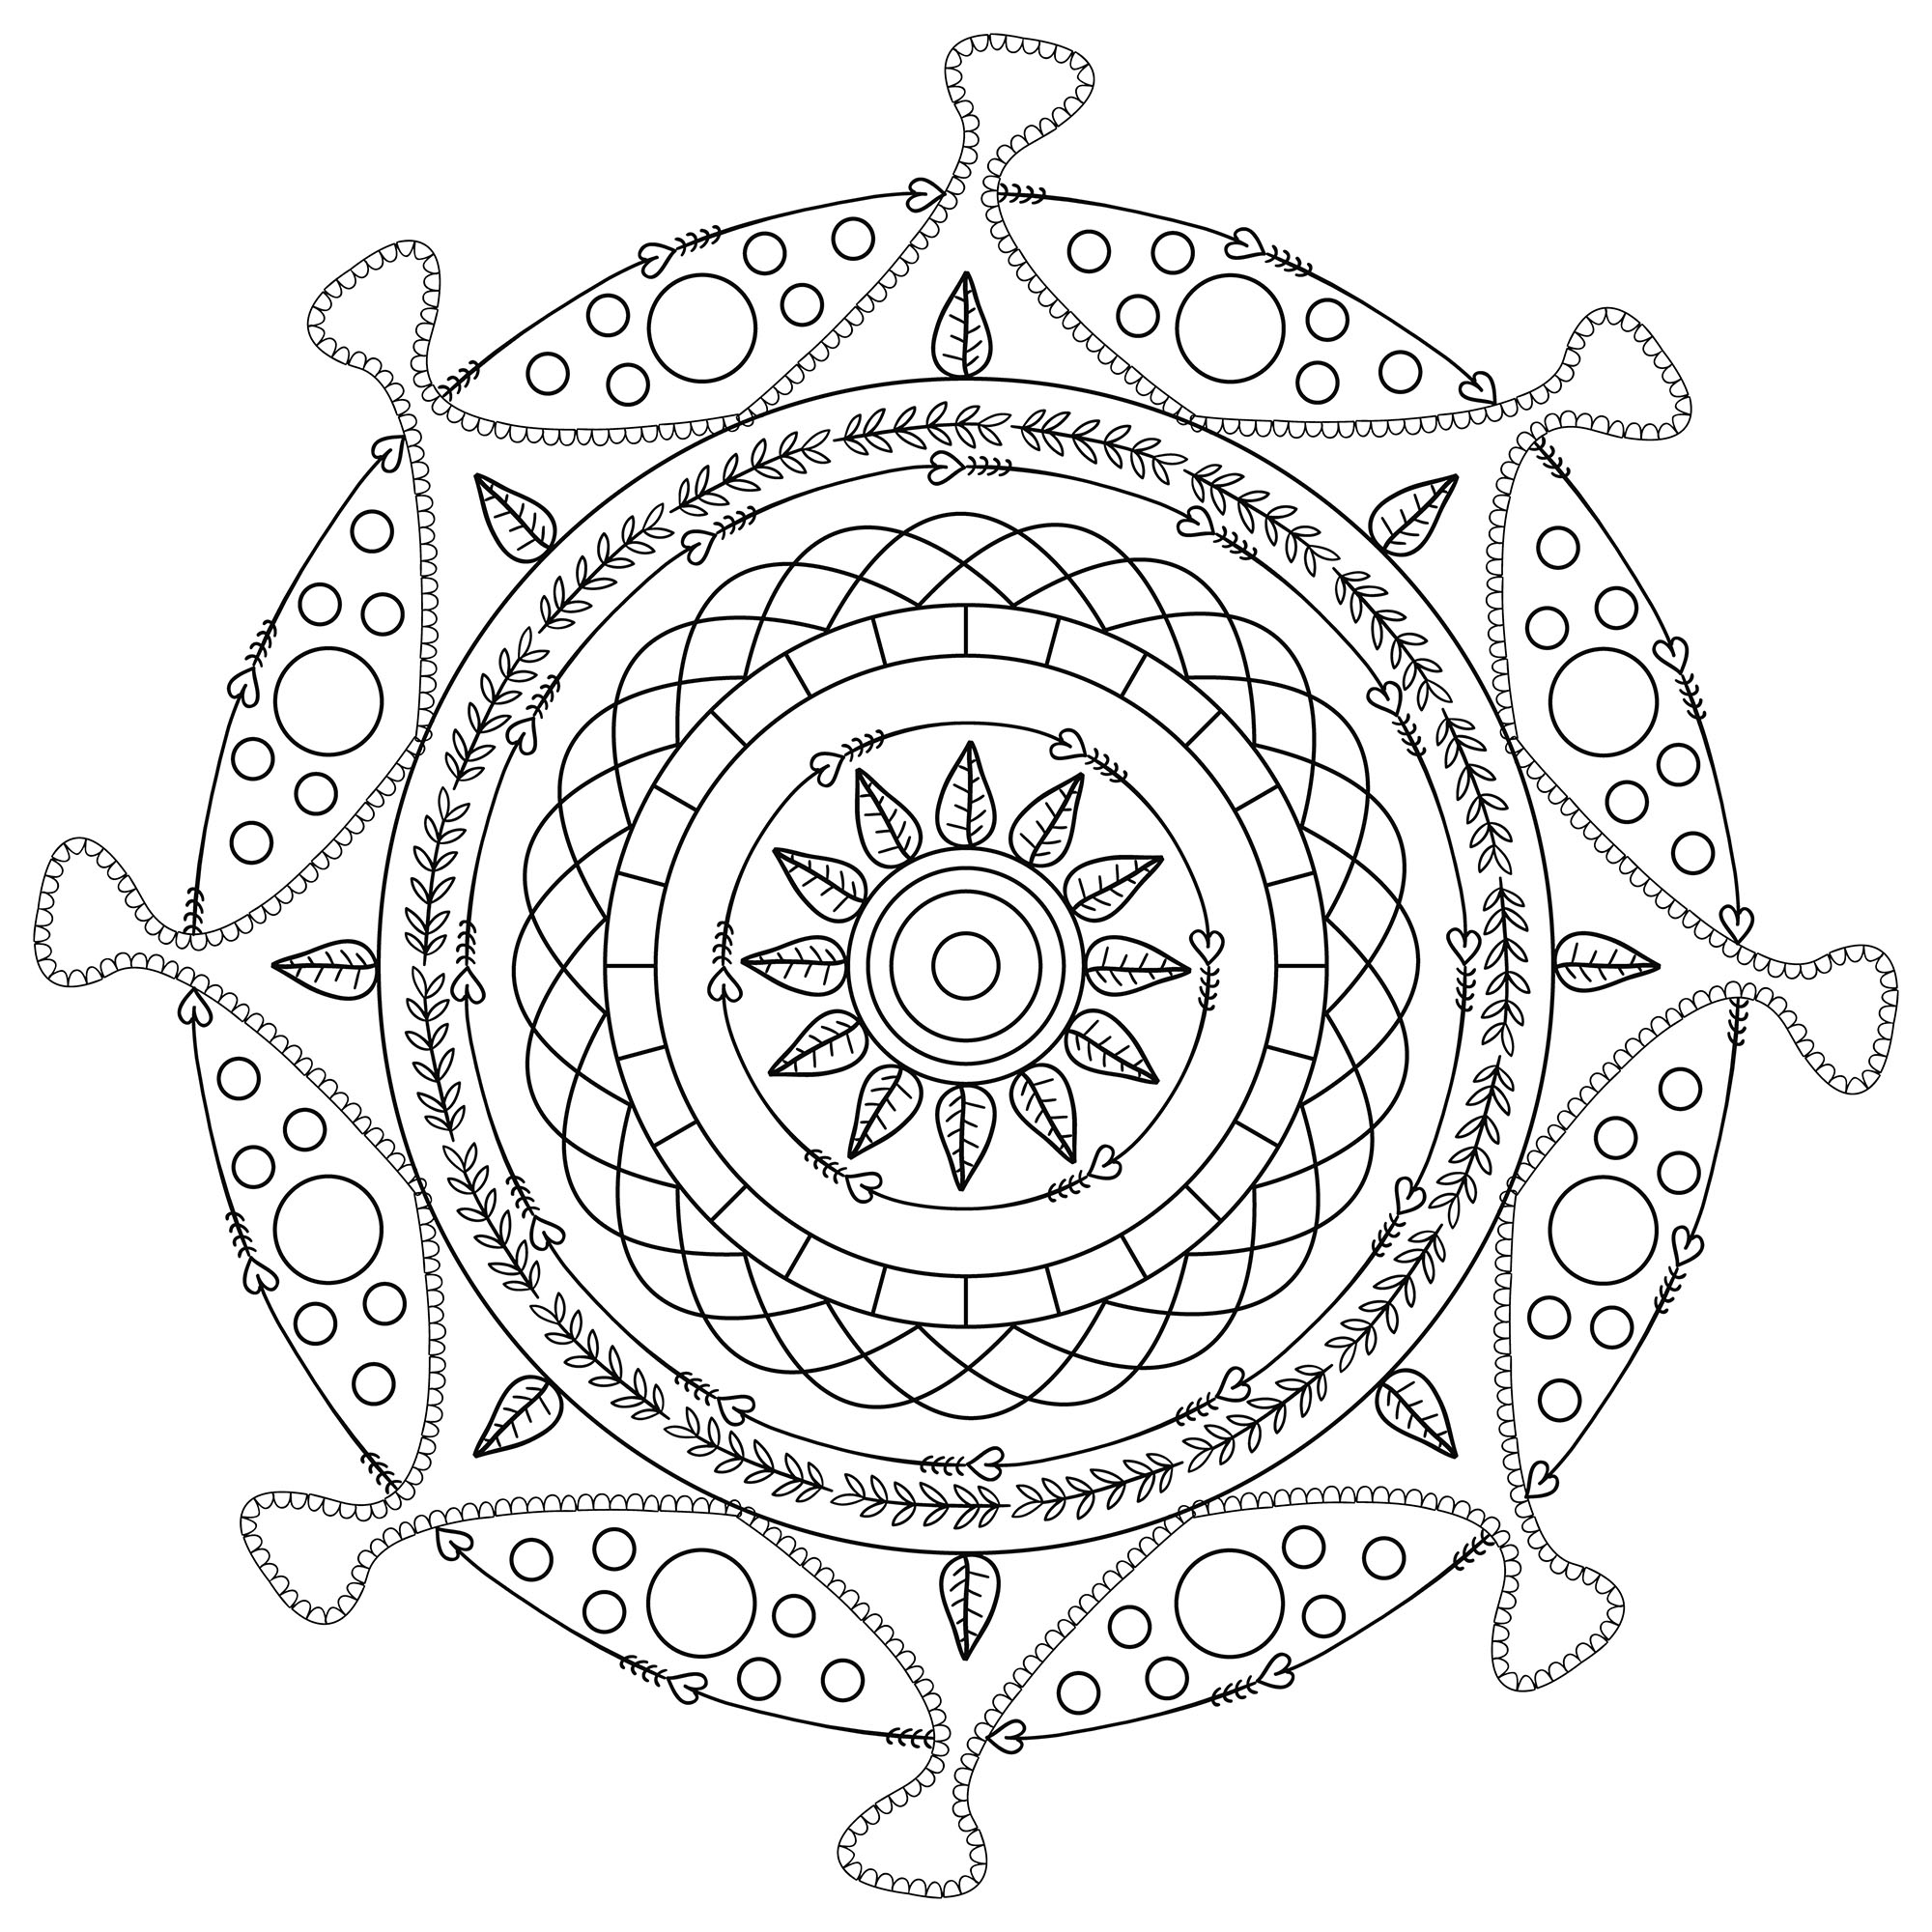 Offrez-vous une parenthèse de zénitude avec ce superbe Mandala à colorier sans plus attendre, avec les couleurs qui vous plaisent le plus.